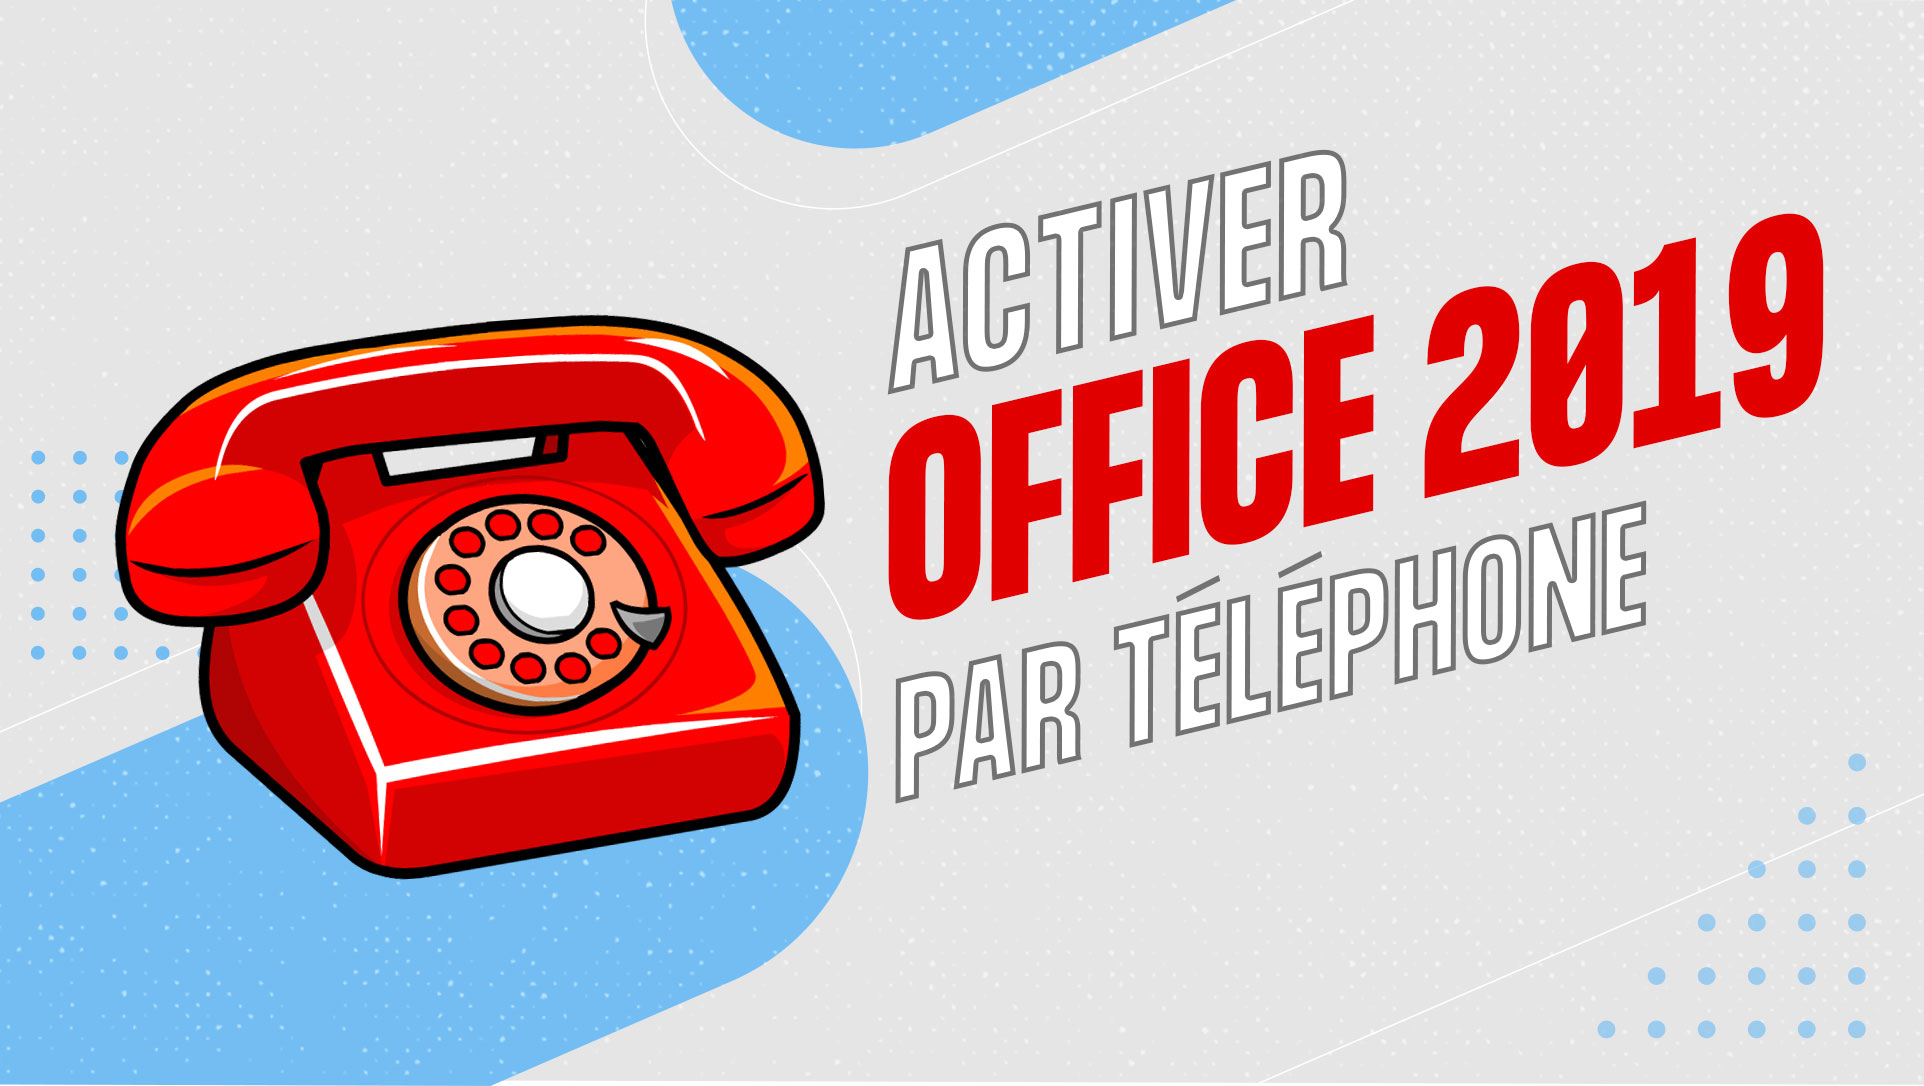 Activer office 2019 par téléphone